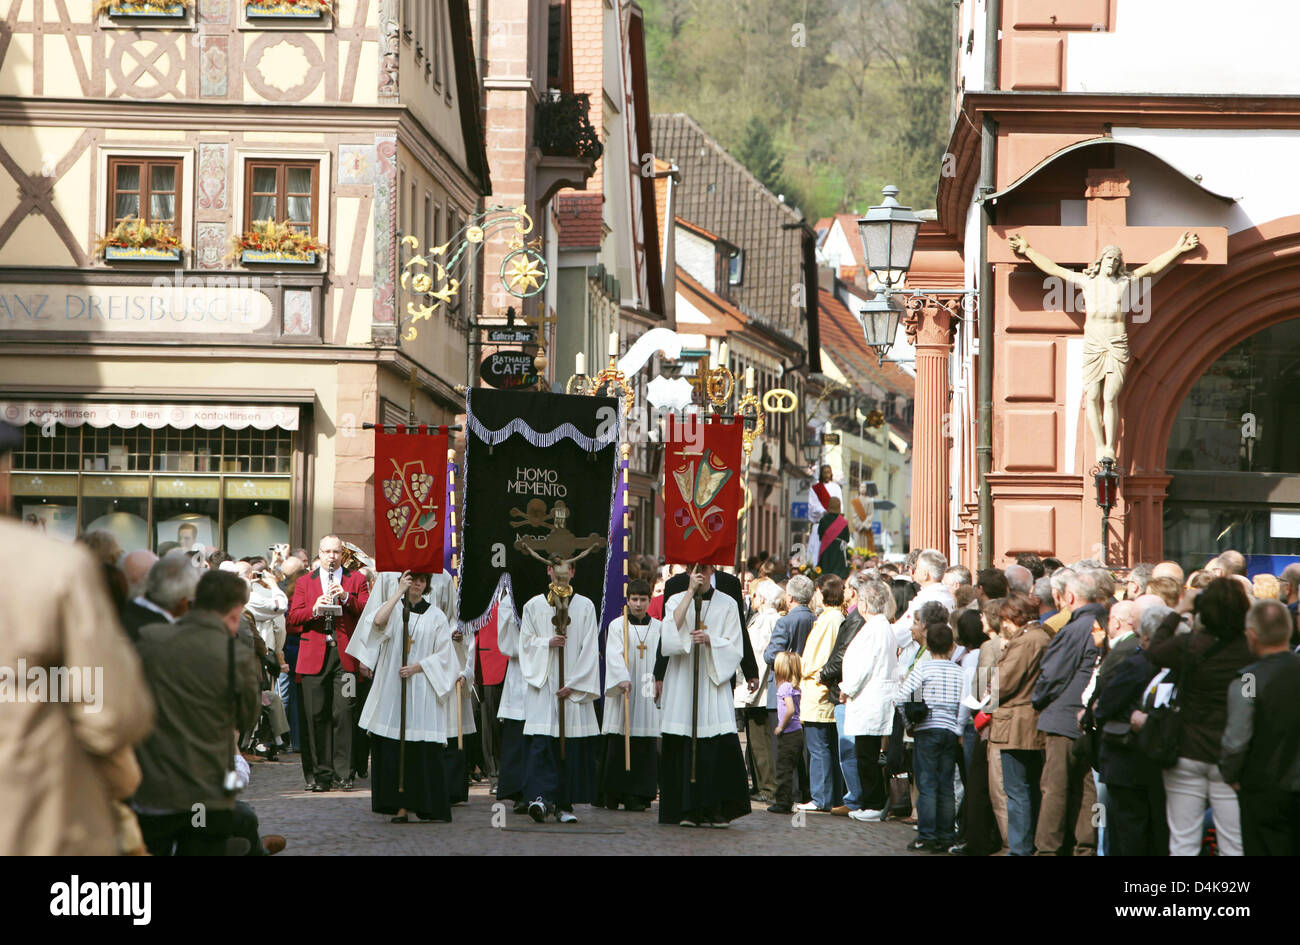 Le plomb des acolytes Le Vendredi Saint procession à Lohr am Main, Allemagne, 10 avril 2009. La procession à Lohr am Main est considéré comme unique en tant que membres de guildes d'artisans processus avec 13 grandes figures en bois silencieusement à travers la ville. Photo : MARCUS FUEHRER Banque D'Images